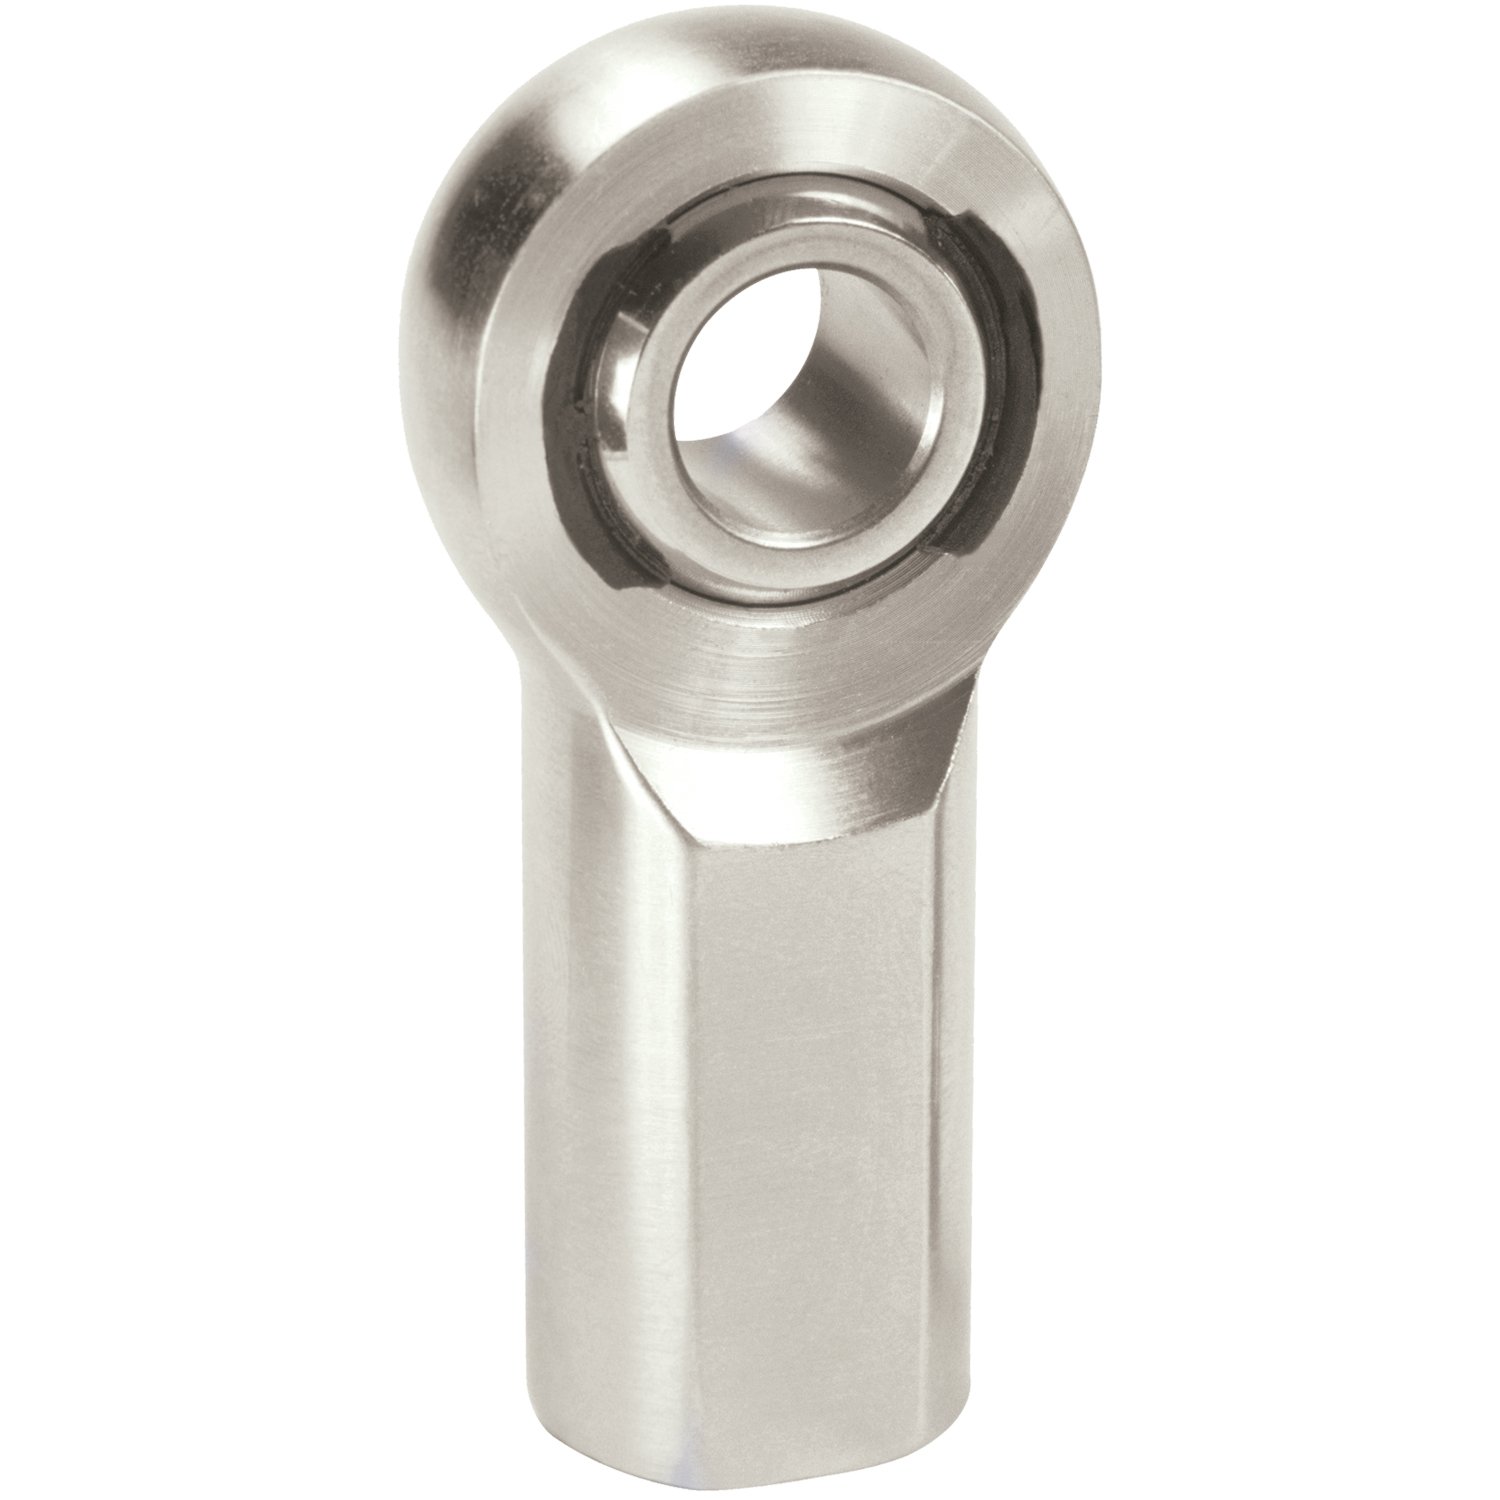 XF Chromoly Steel Series Rod End Hole I.D.: .3125"